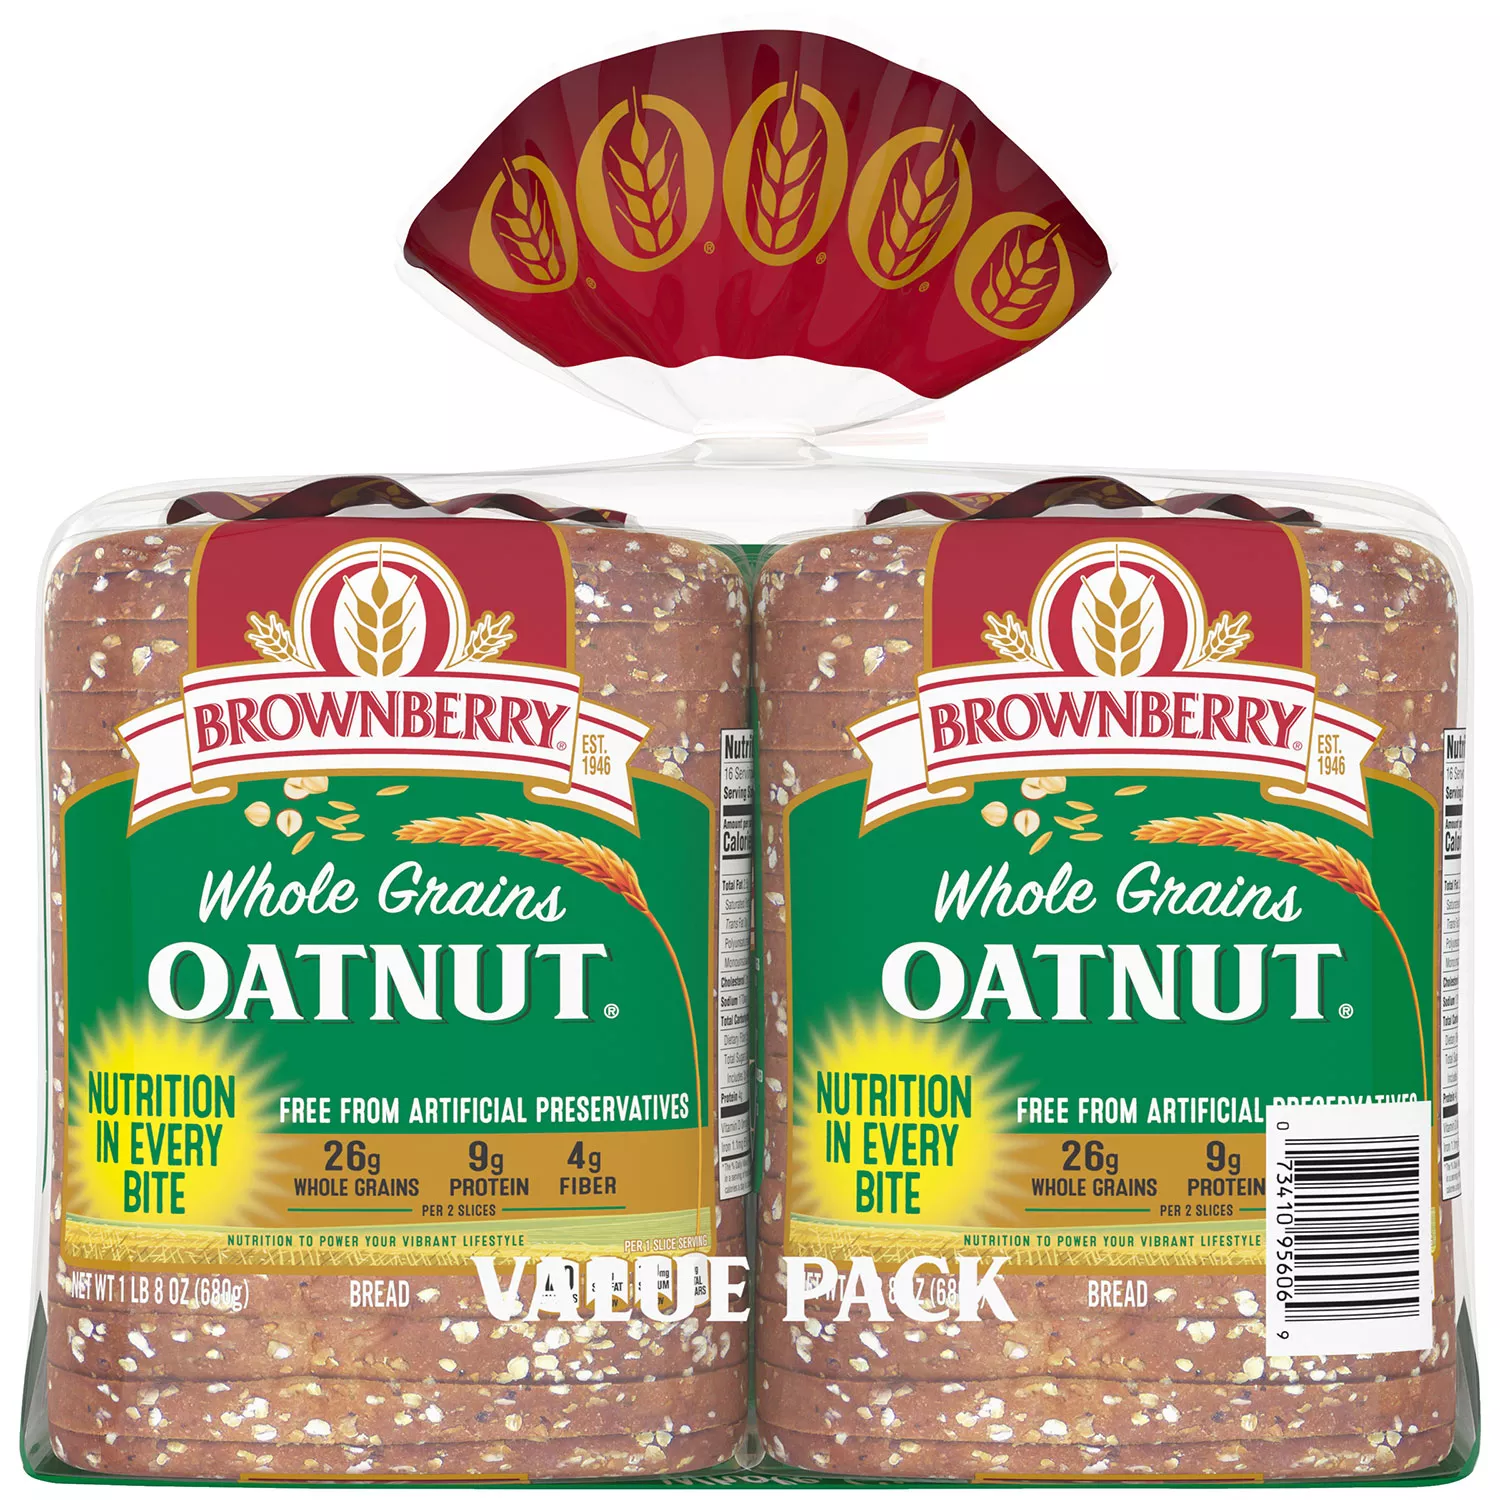 Brownberry Whole Grains Oatnut Bread (24oz / 2pk)